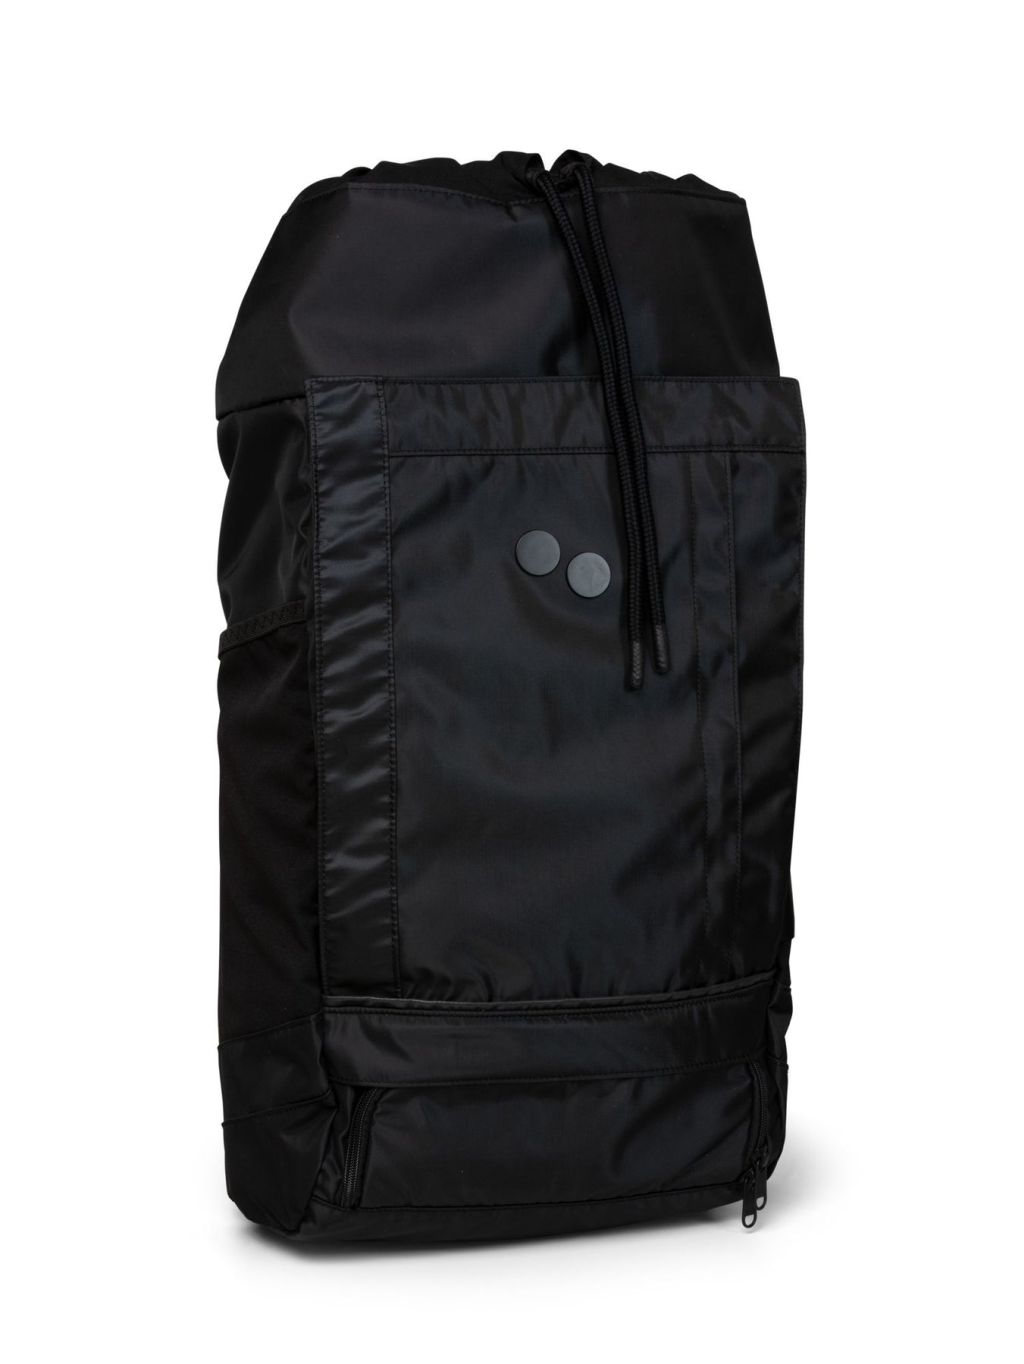 BLOK Large Backpack polished black